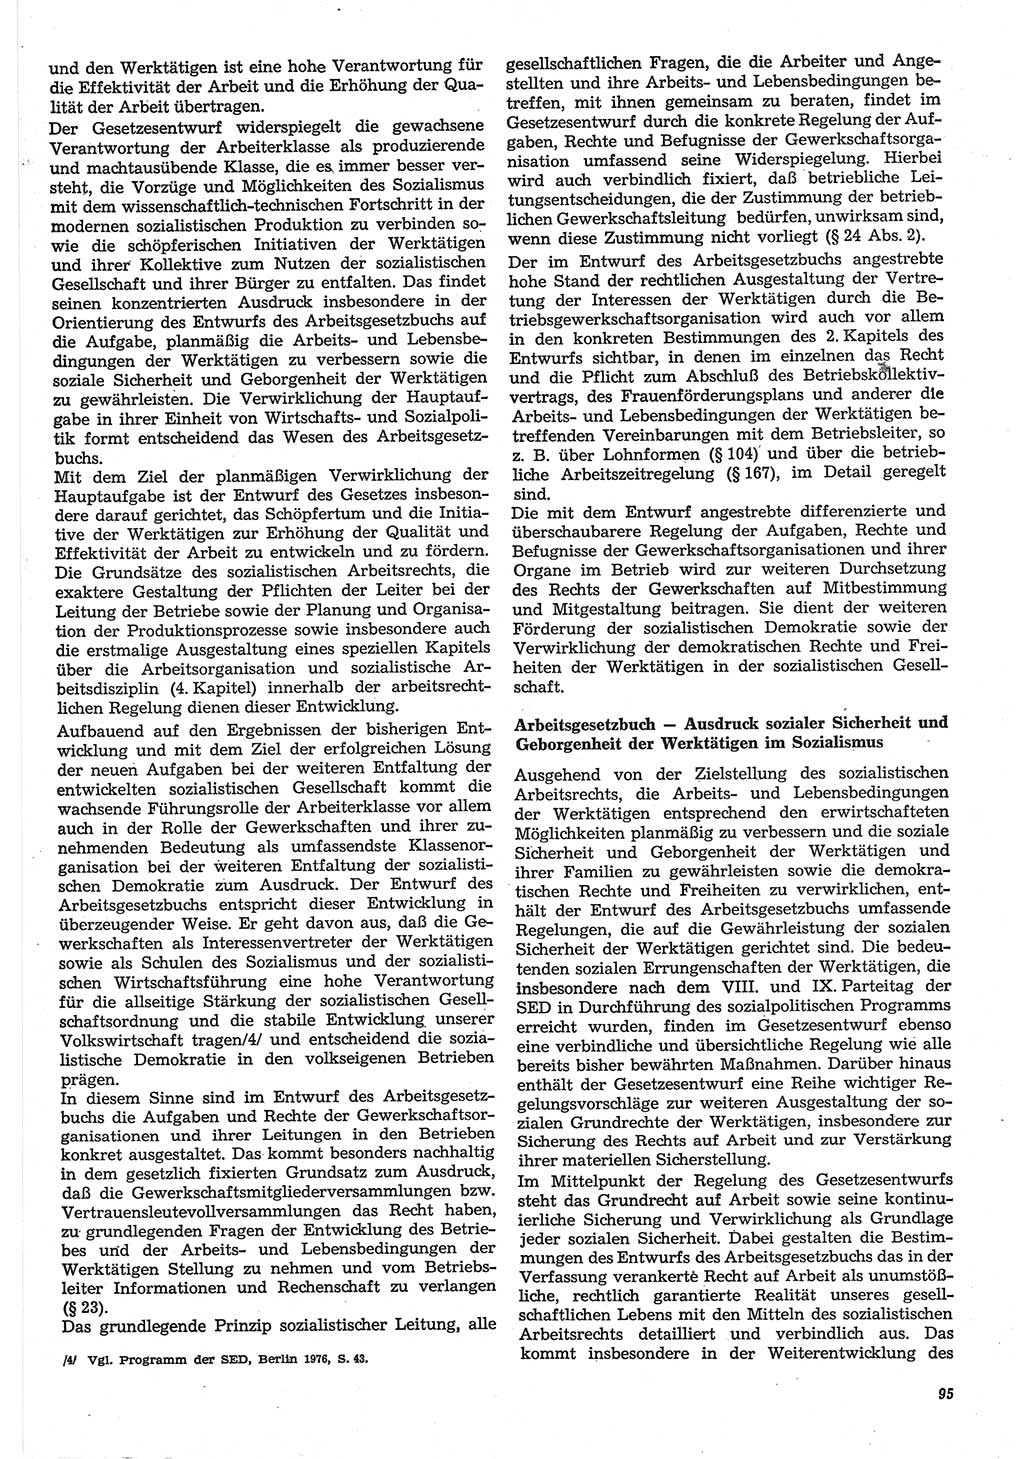 Neue Justiz (NJ), Zeitschrift für Recht und Rechtswissenschaft-Zeitschrift, sozialistisches Recht und Gesetzlichkeit, 31. Jahrgang 1977, Seite 95 (NJ DDR 1977, S. 95)